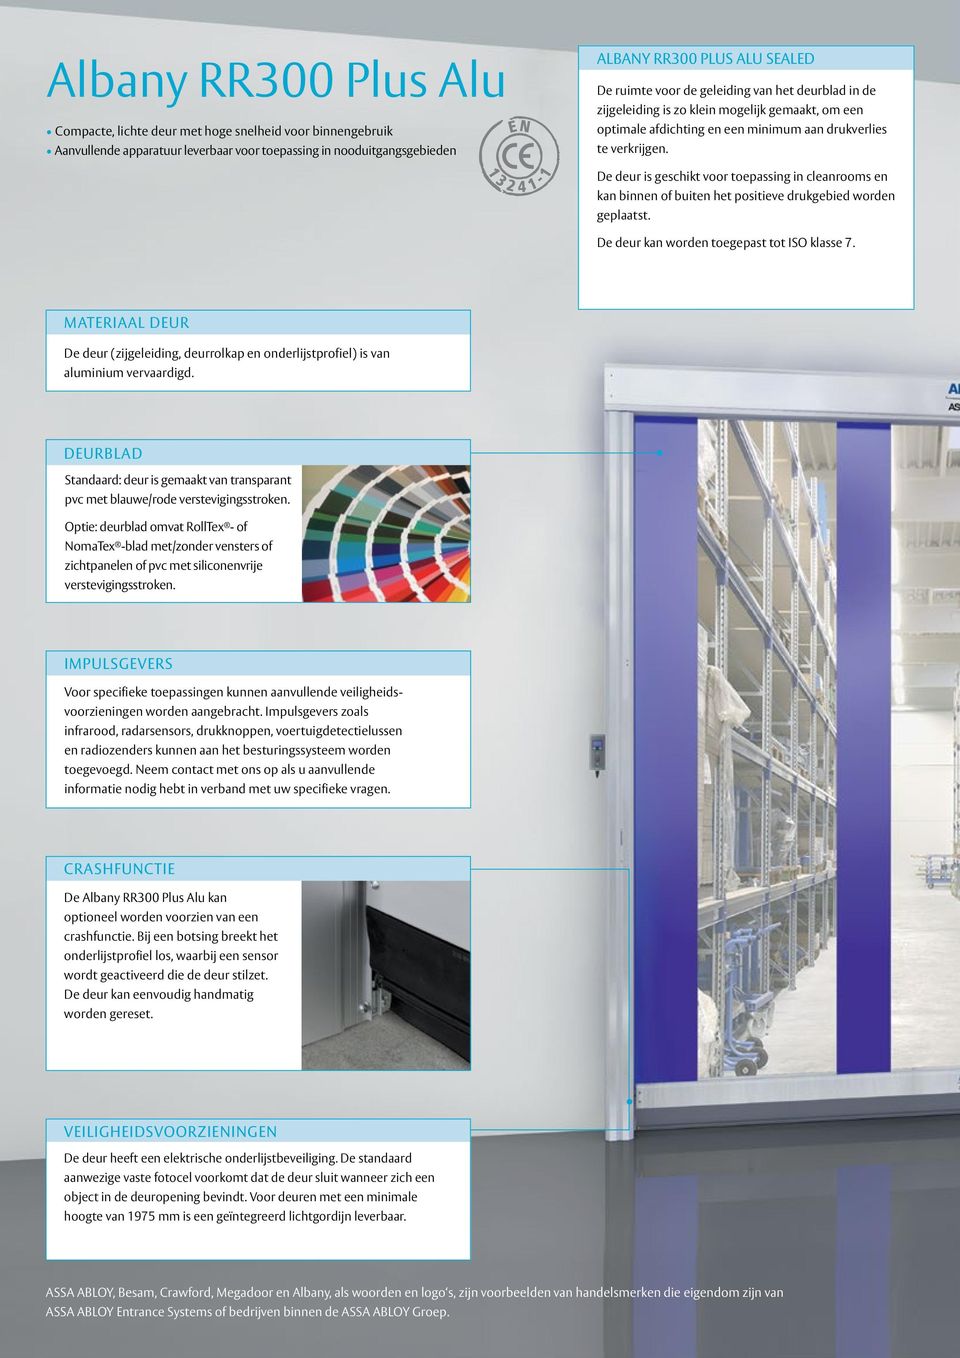 De deur is geschikt voor toepassing in cleanrooms en kan binnen of buiten het positieve drukgebied worden geplaatst. De deur kan worden toegepast tot ISO klasse 7.